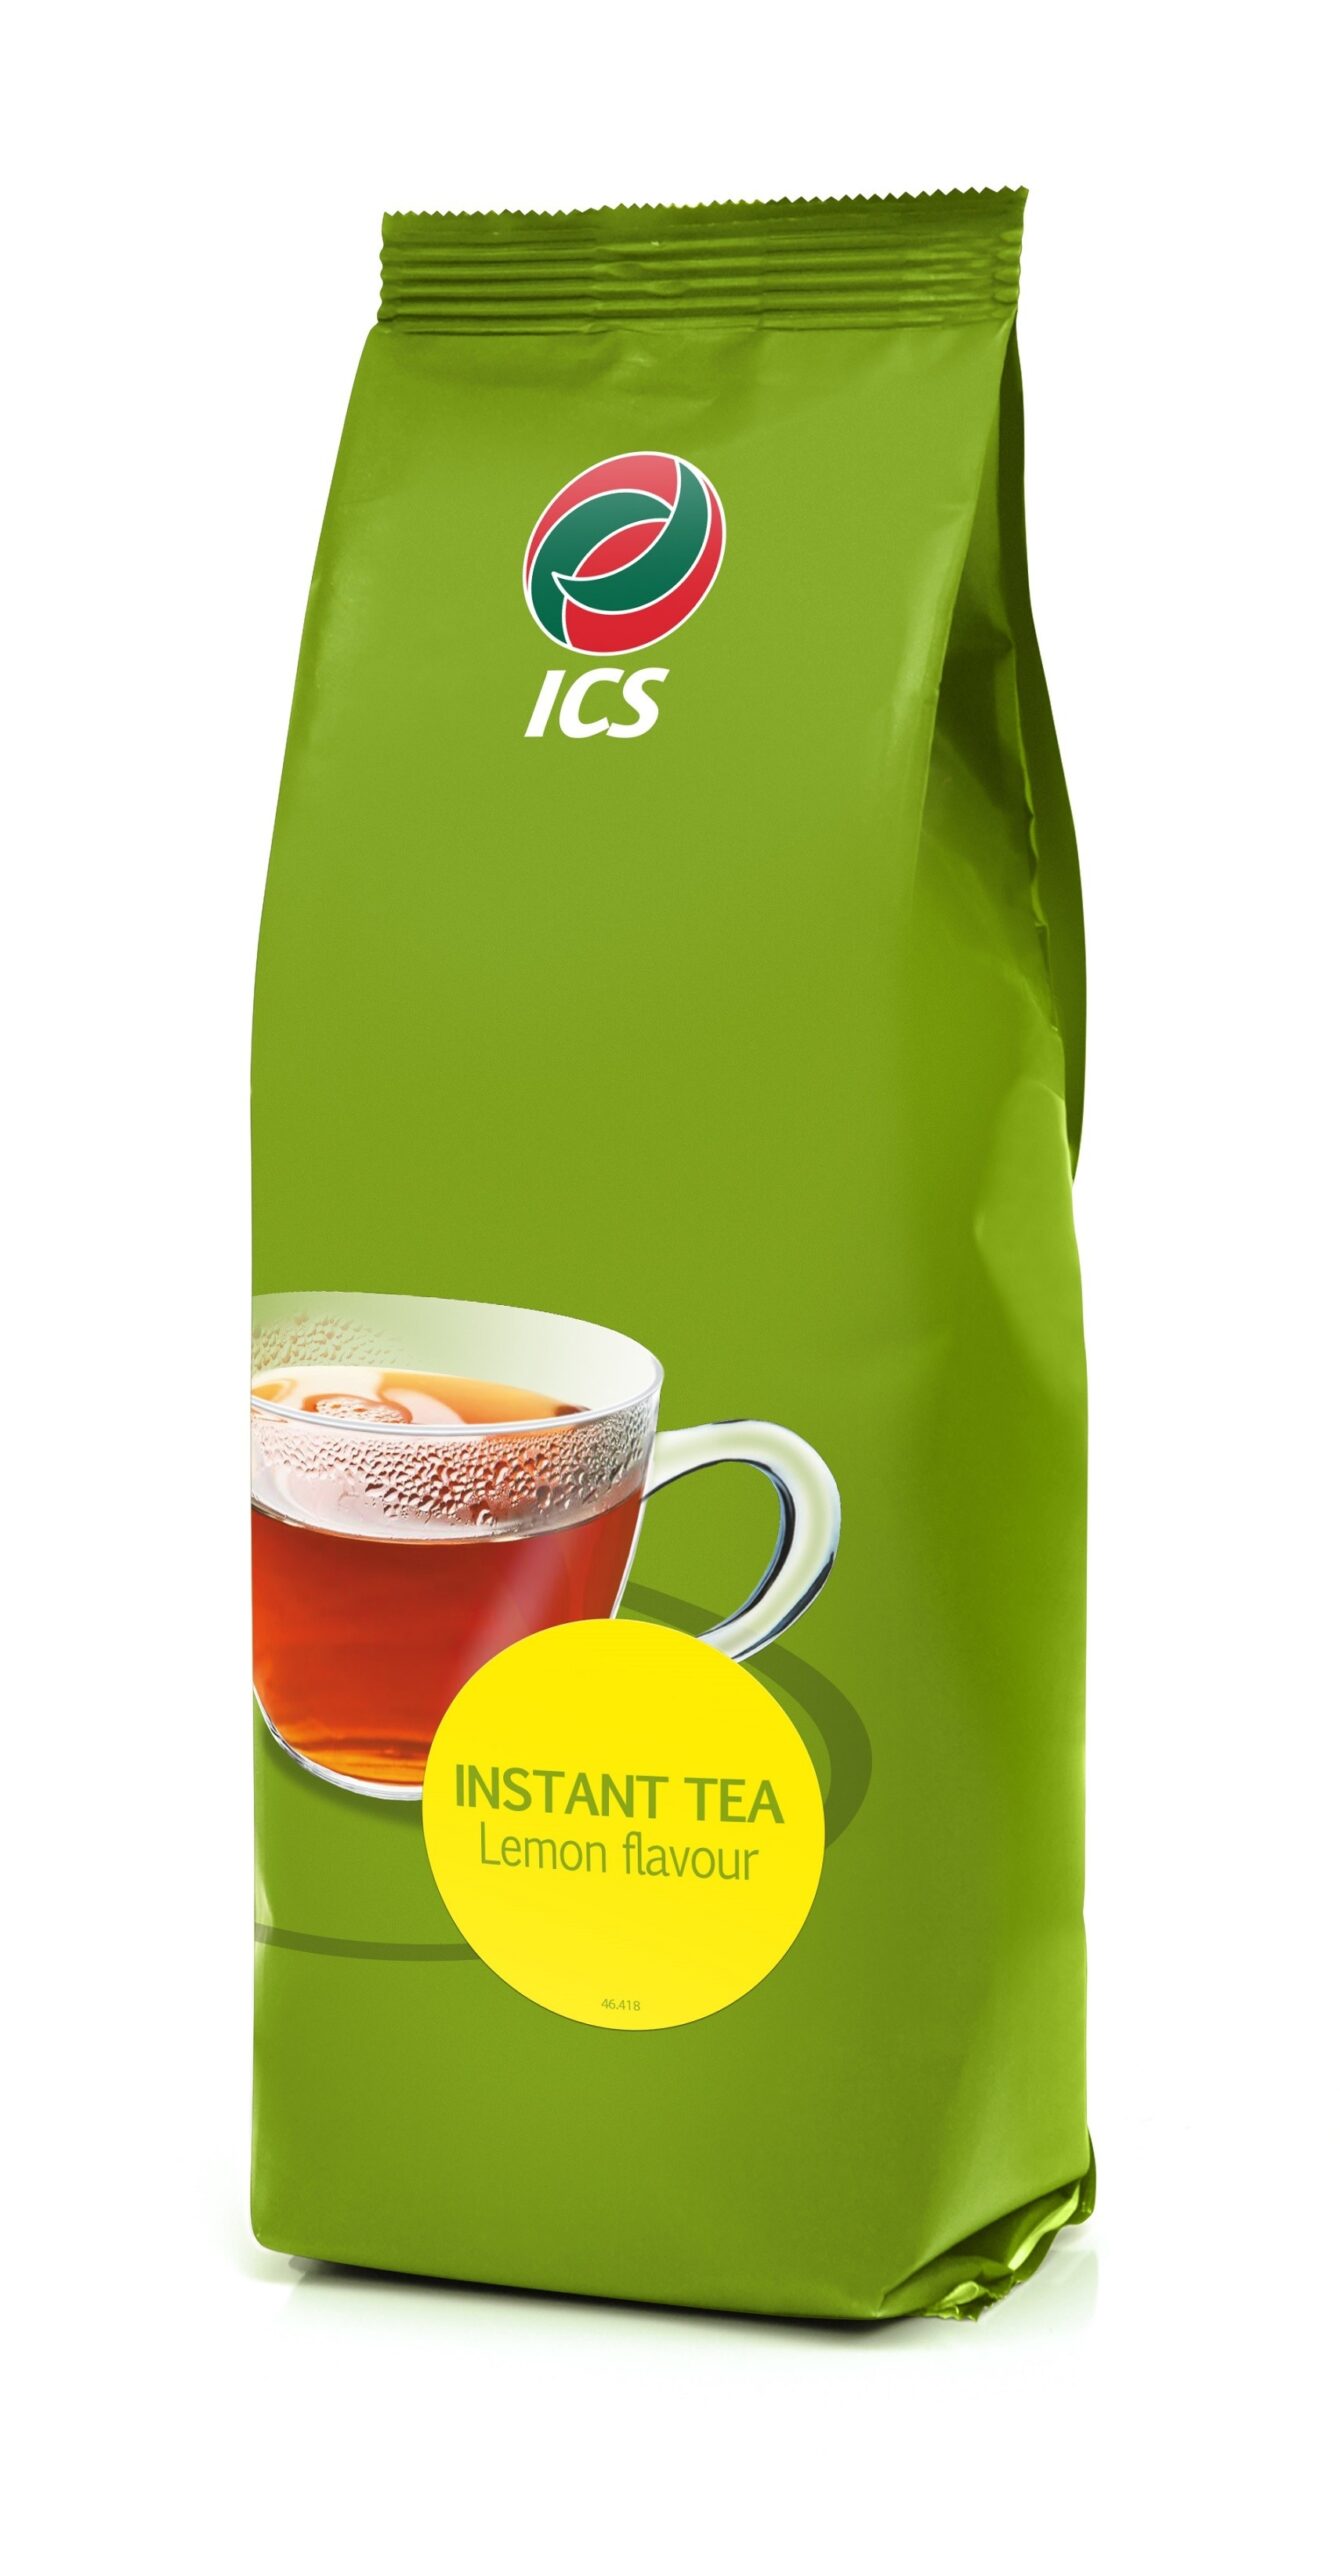 ICS Ceai Lamaie instant 1kg (formula noua)